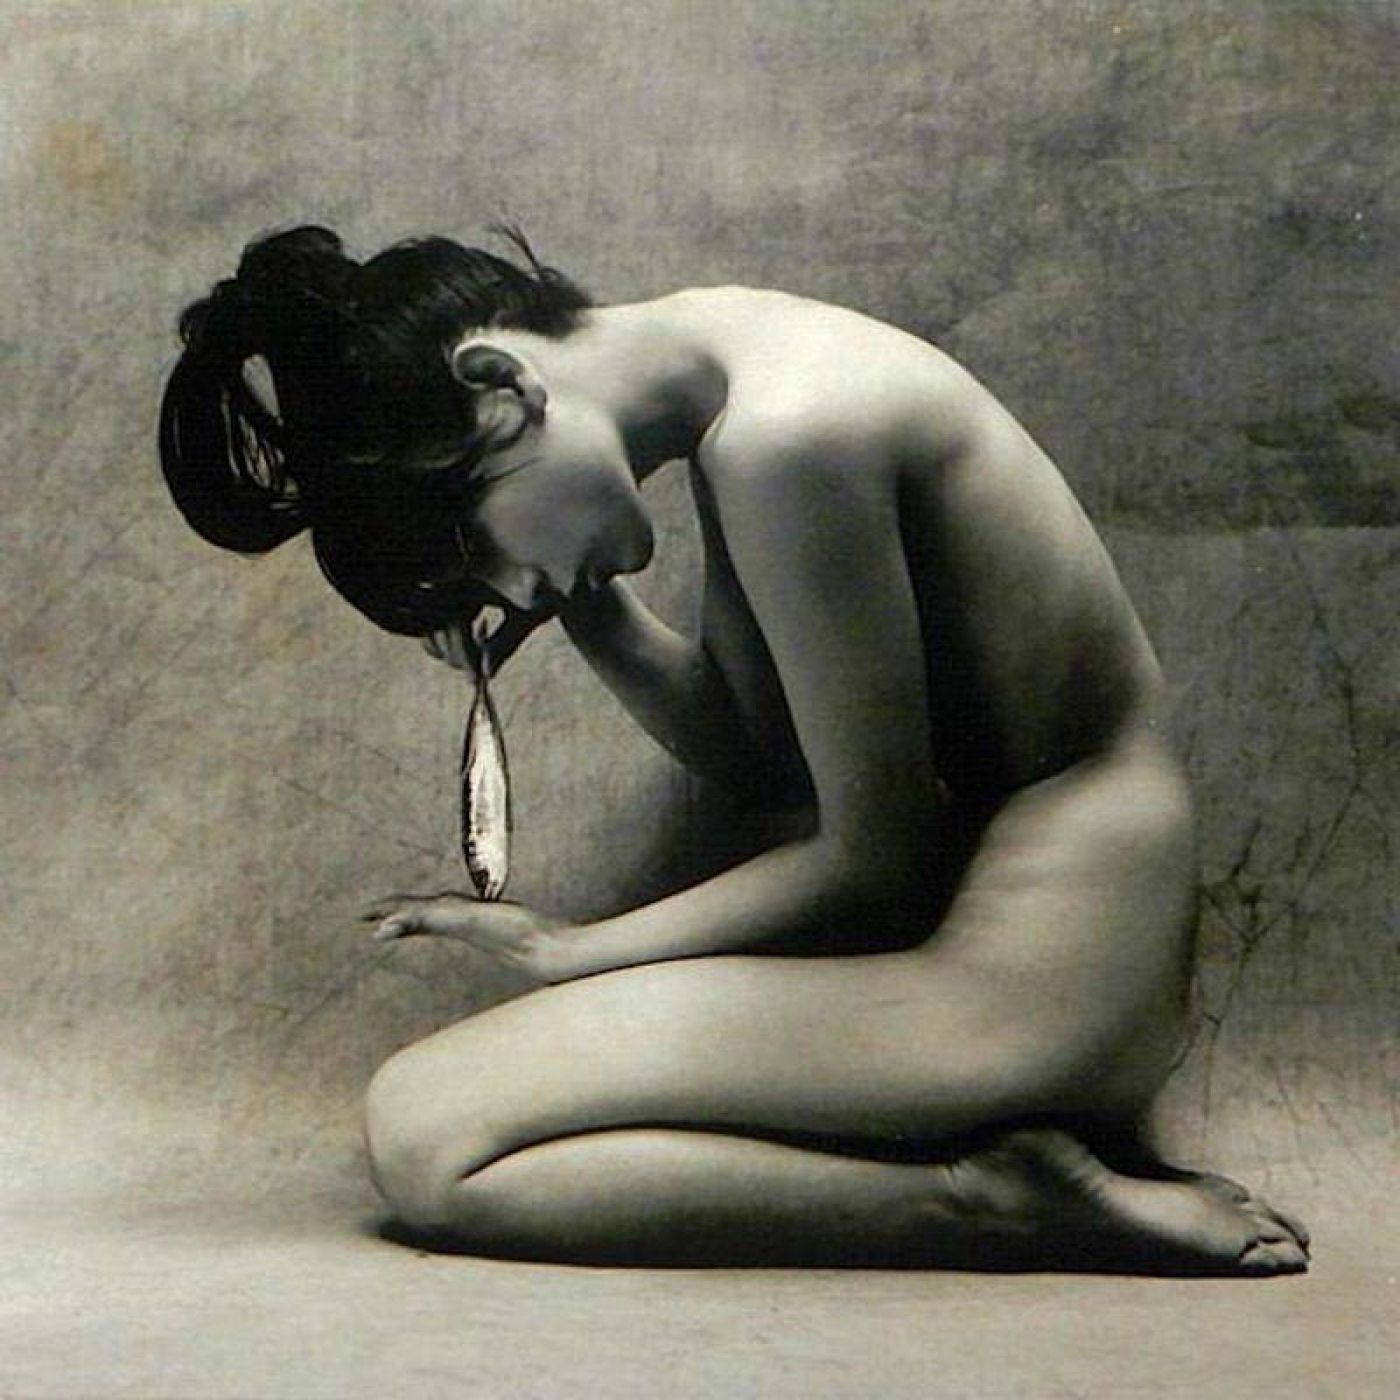 Eikoh Hosoe, “Untitled”, 1969